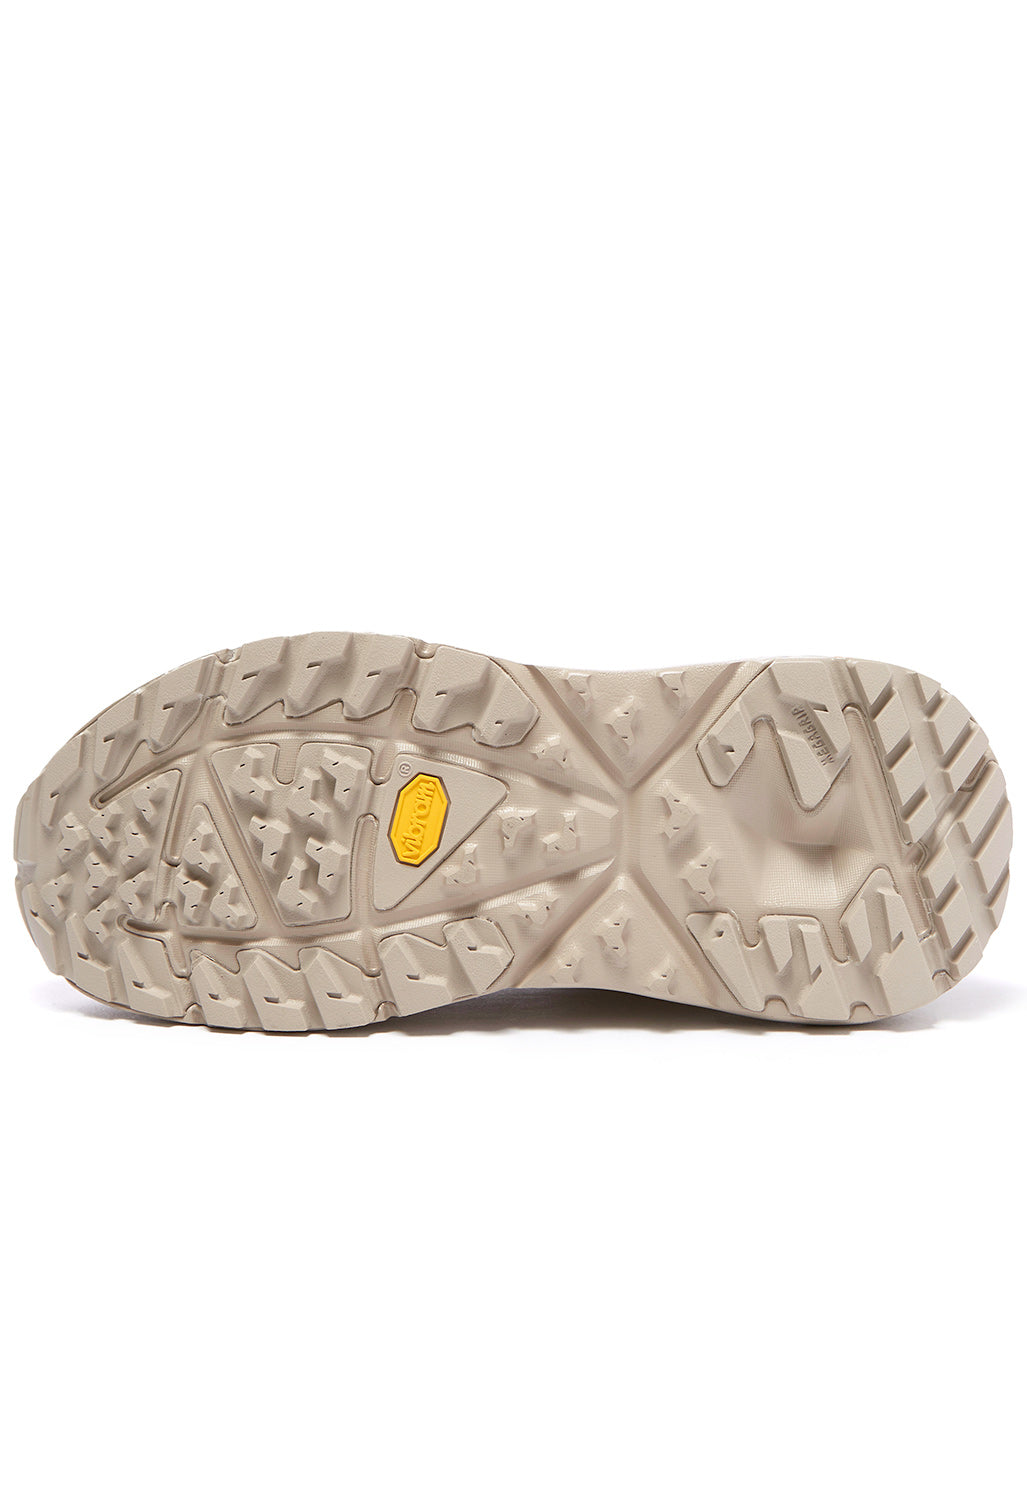 Hoka Kaha Low GORE-TEX Shoes - Simply Taupe/Bungee Cord